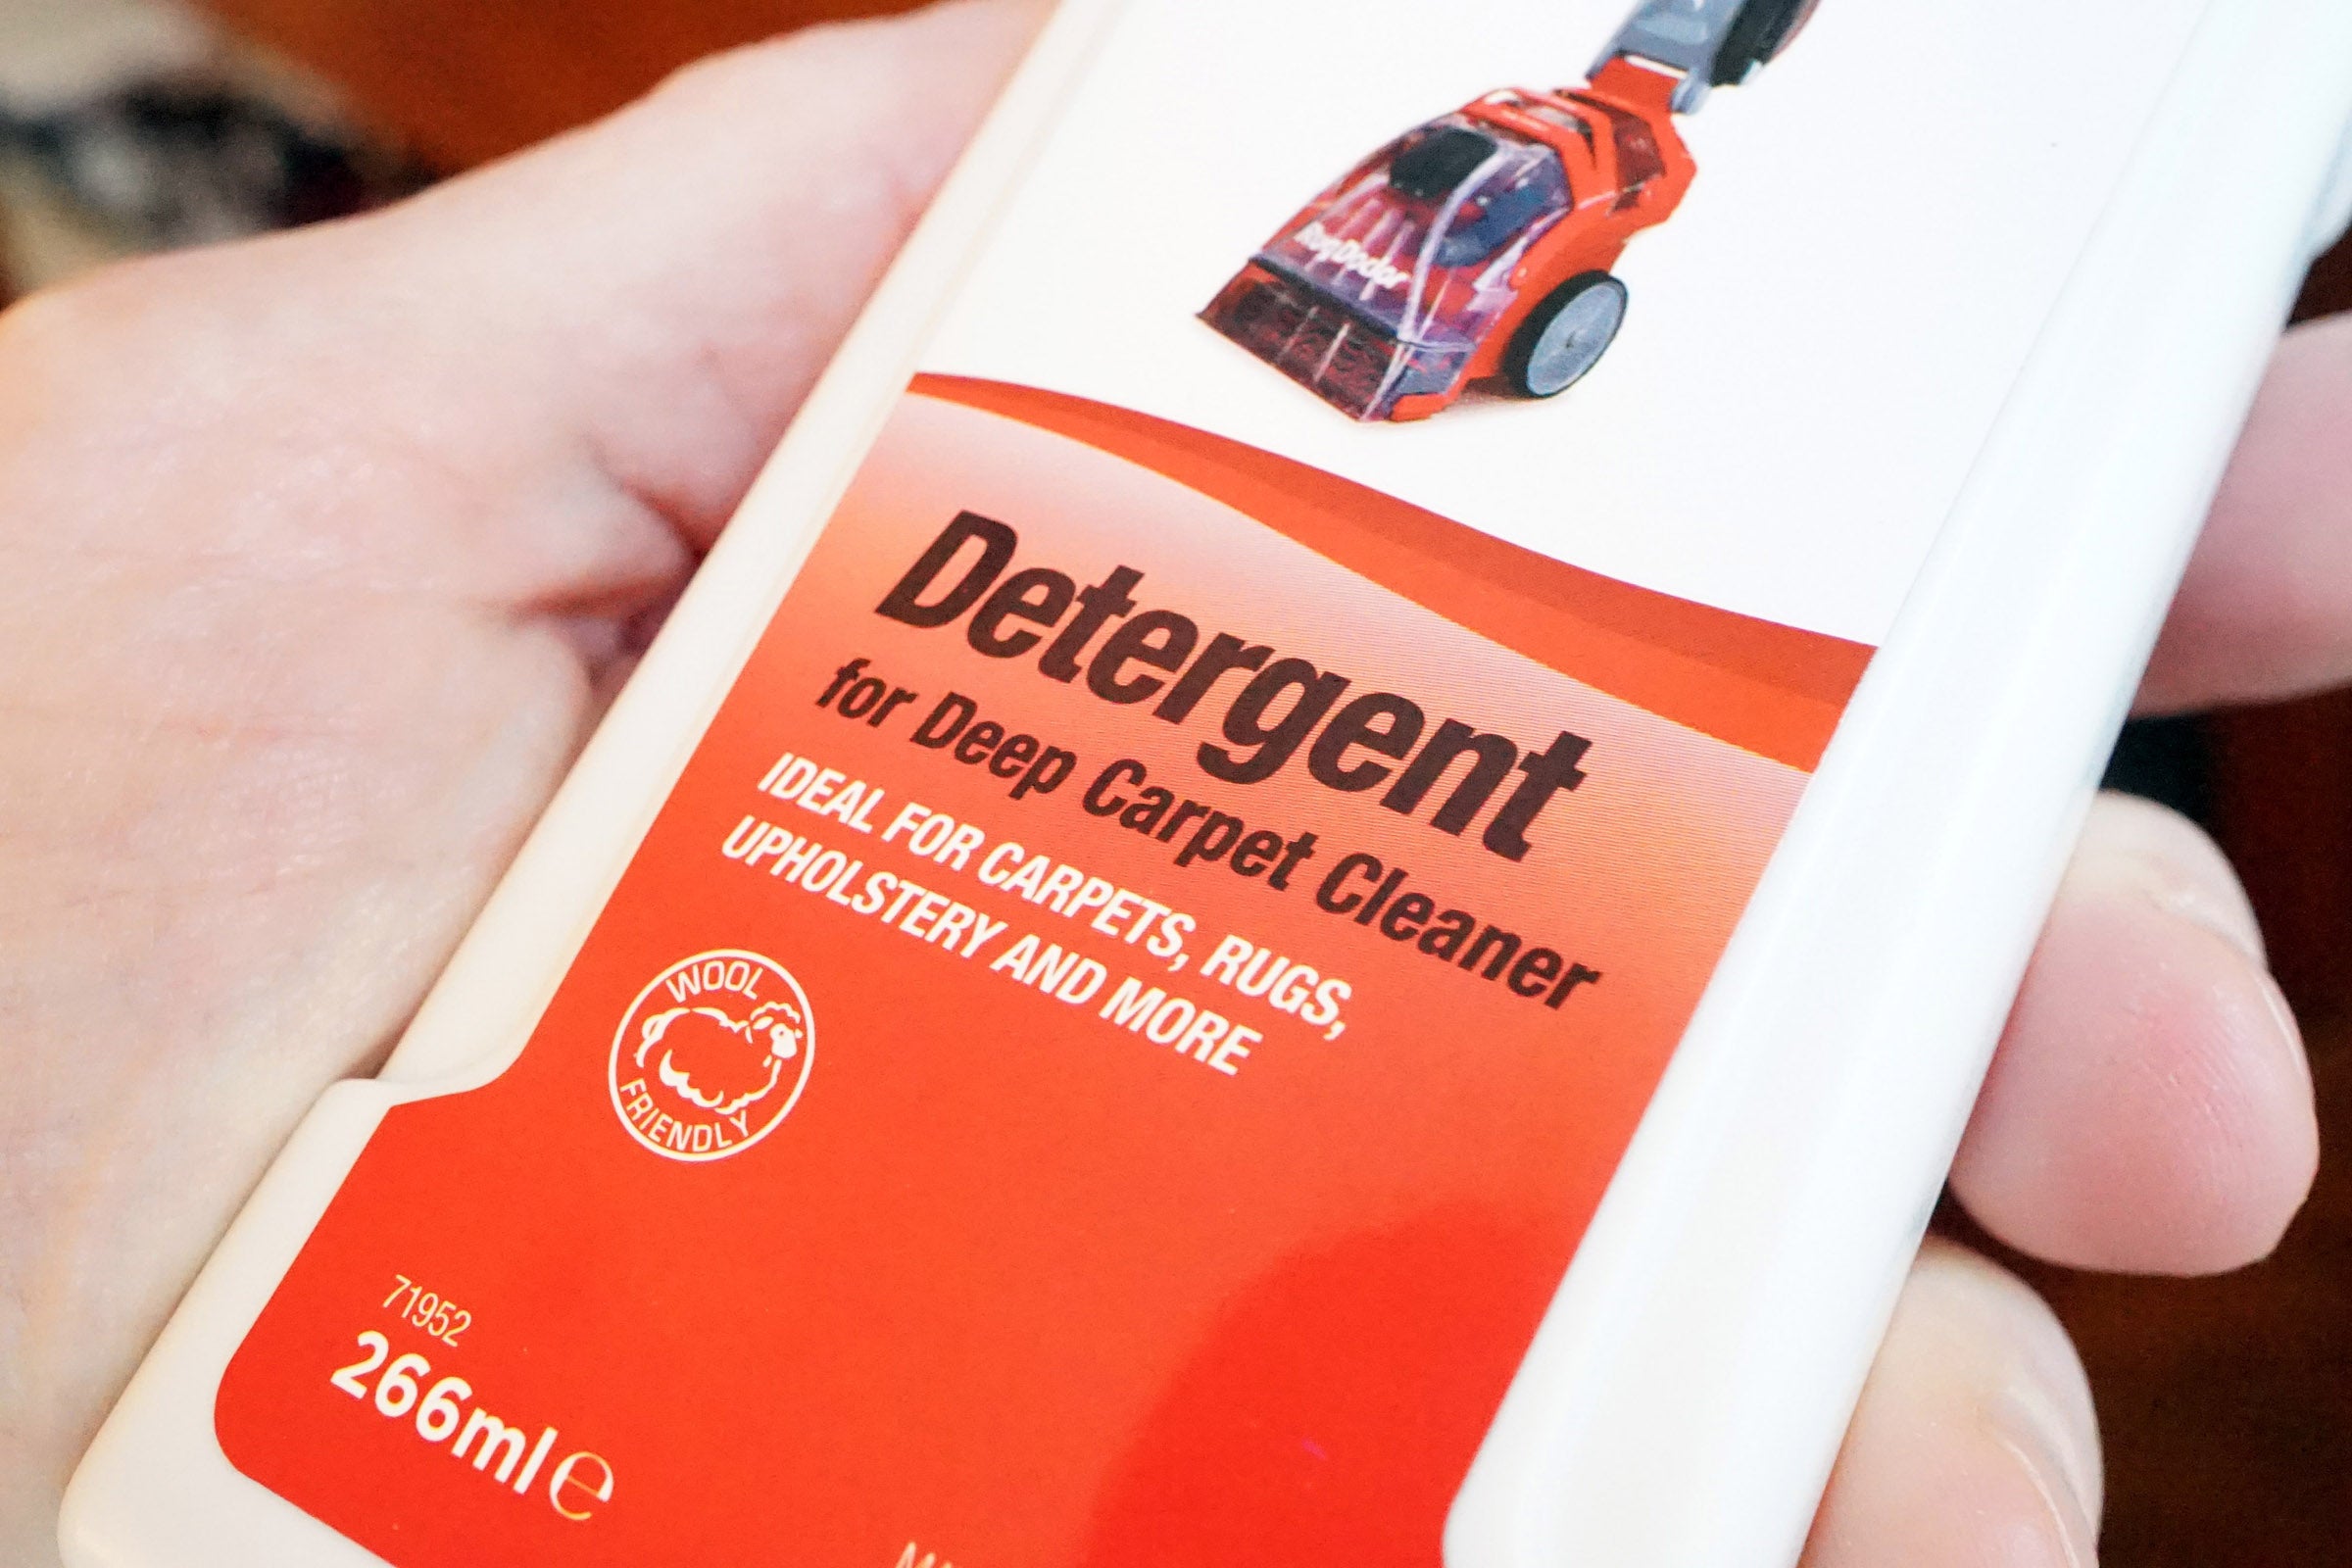 Rug Doctor detergent bottle for deep carpet cleaner.